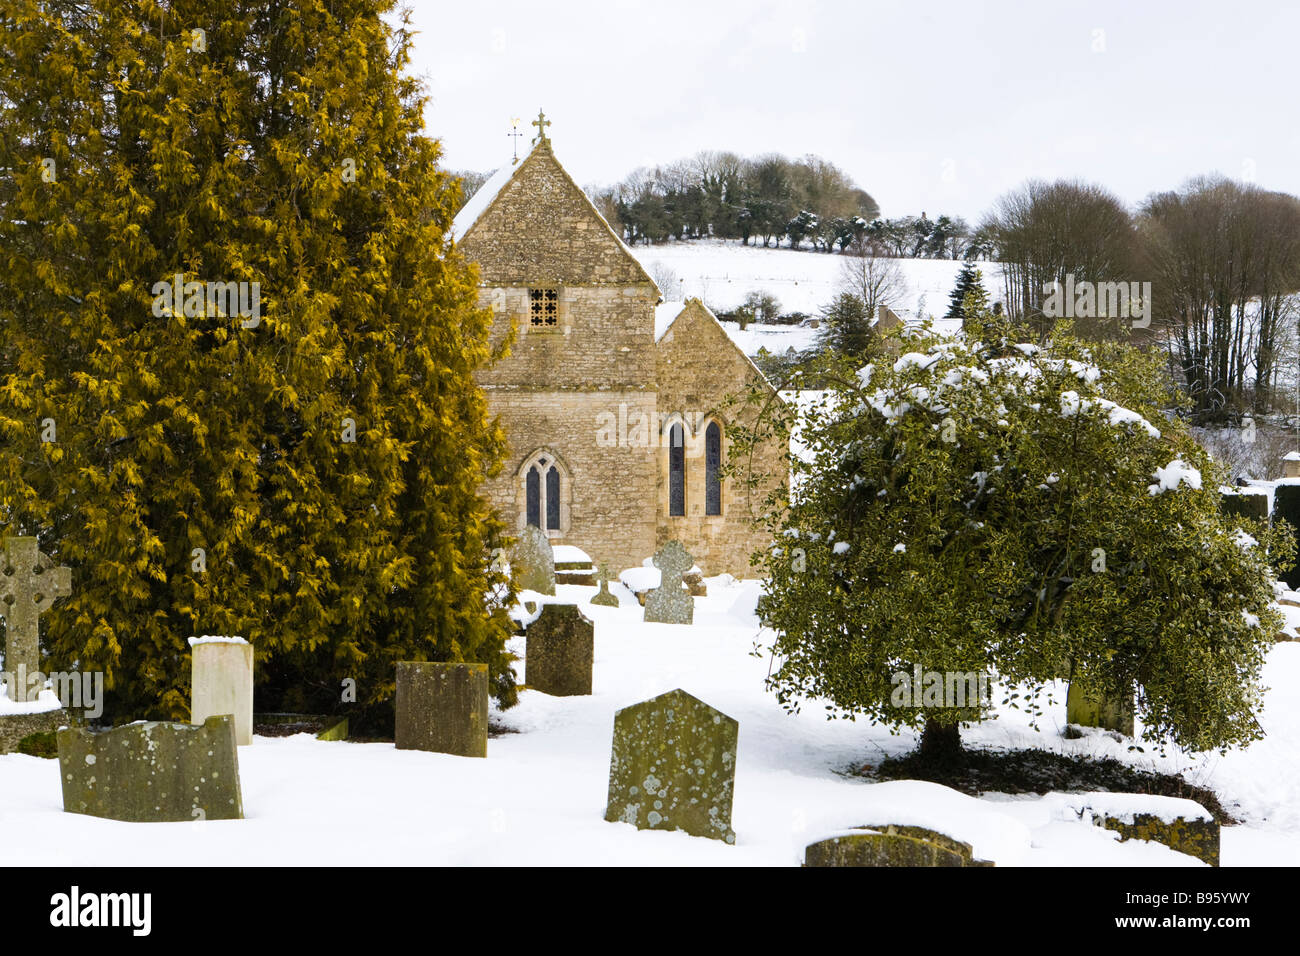 Neige de l'hiver à St Peters Church dans le village de Cotswold Duntisbourne Abbots, Gloucestershire Banque D'Images